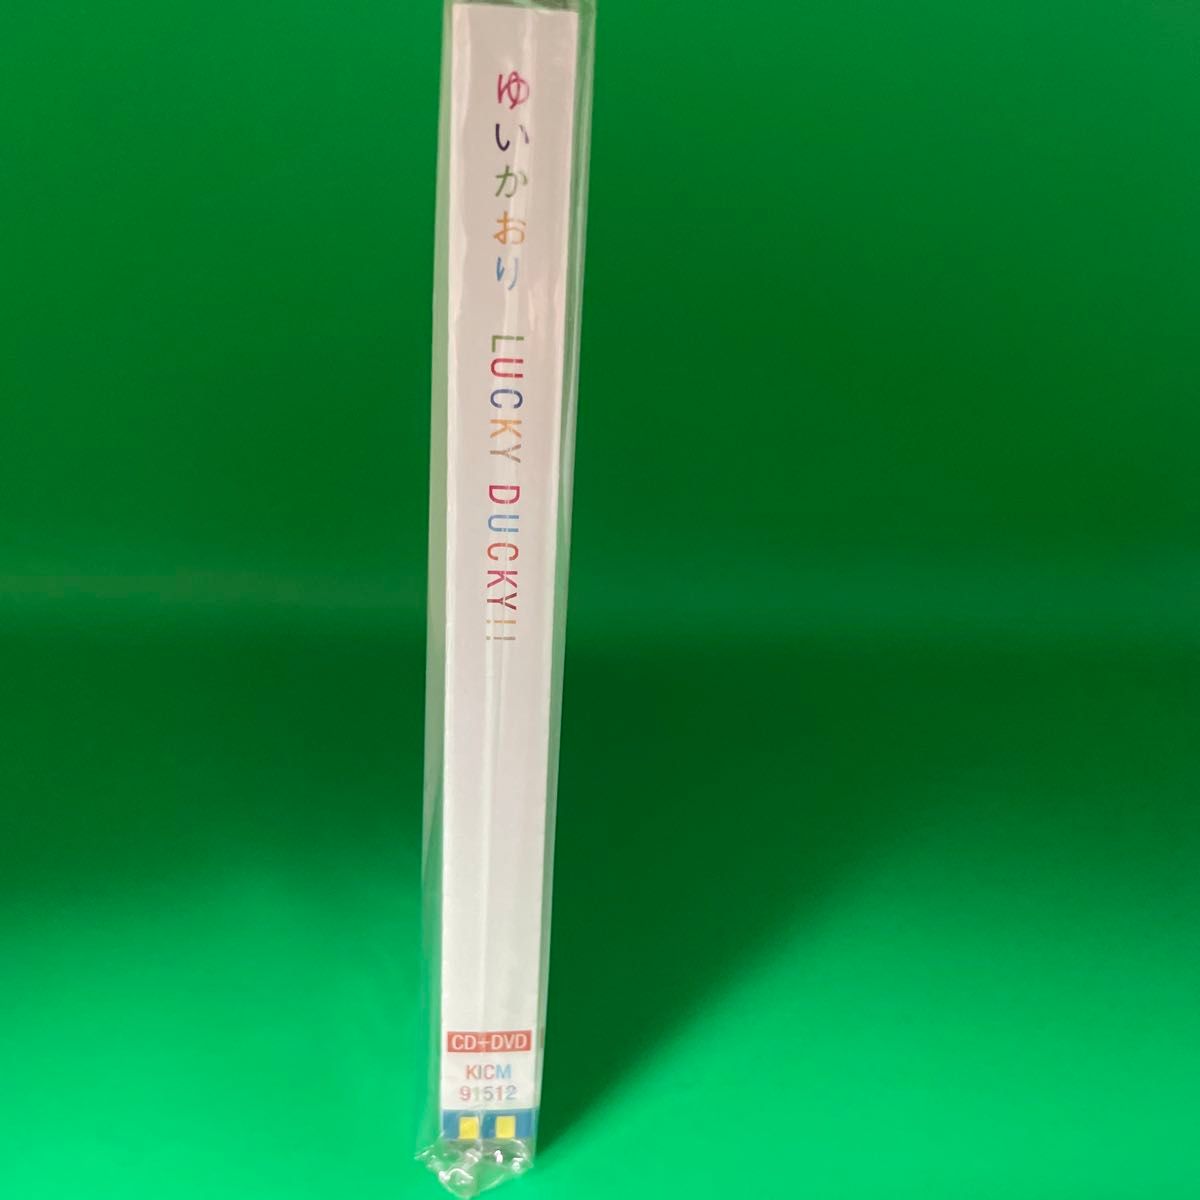 [国内盤CD] ゆいかおり/LUCKY DUCKY!! [CD+DVD] [2枚組] [初回出荷限定盤 (初回限定盤)]